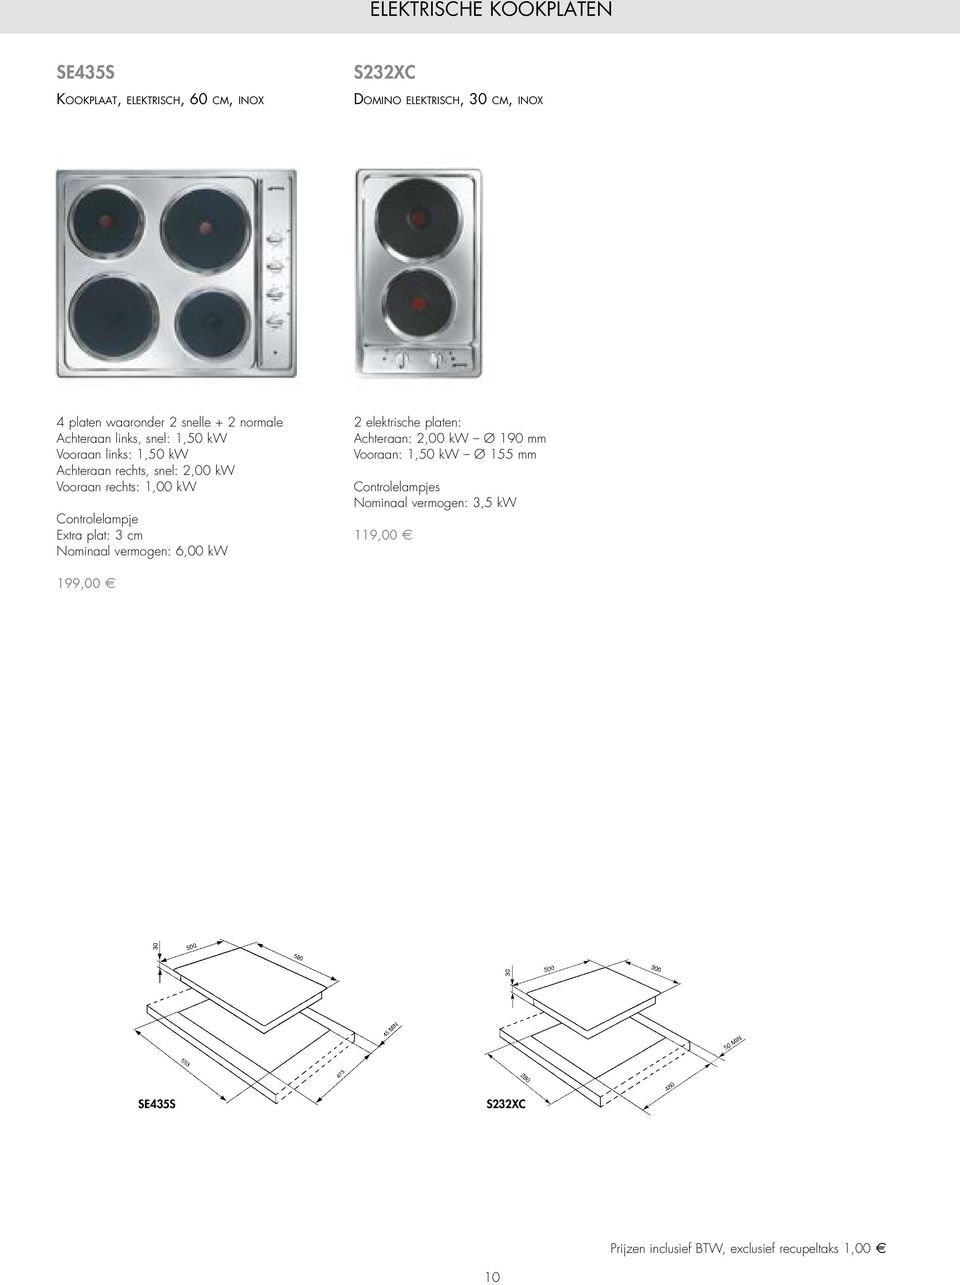 Controlelampje Extra plat: 3 cm Nominaal vermogen: 6,00 kw 2 elektrische platen: Achteraan: 2,00 kw Ø 190 mm Vooraan: 1,50 kw Ø